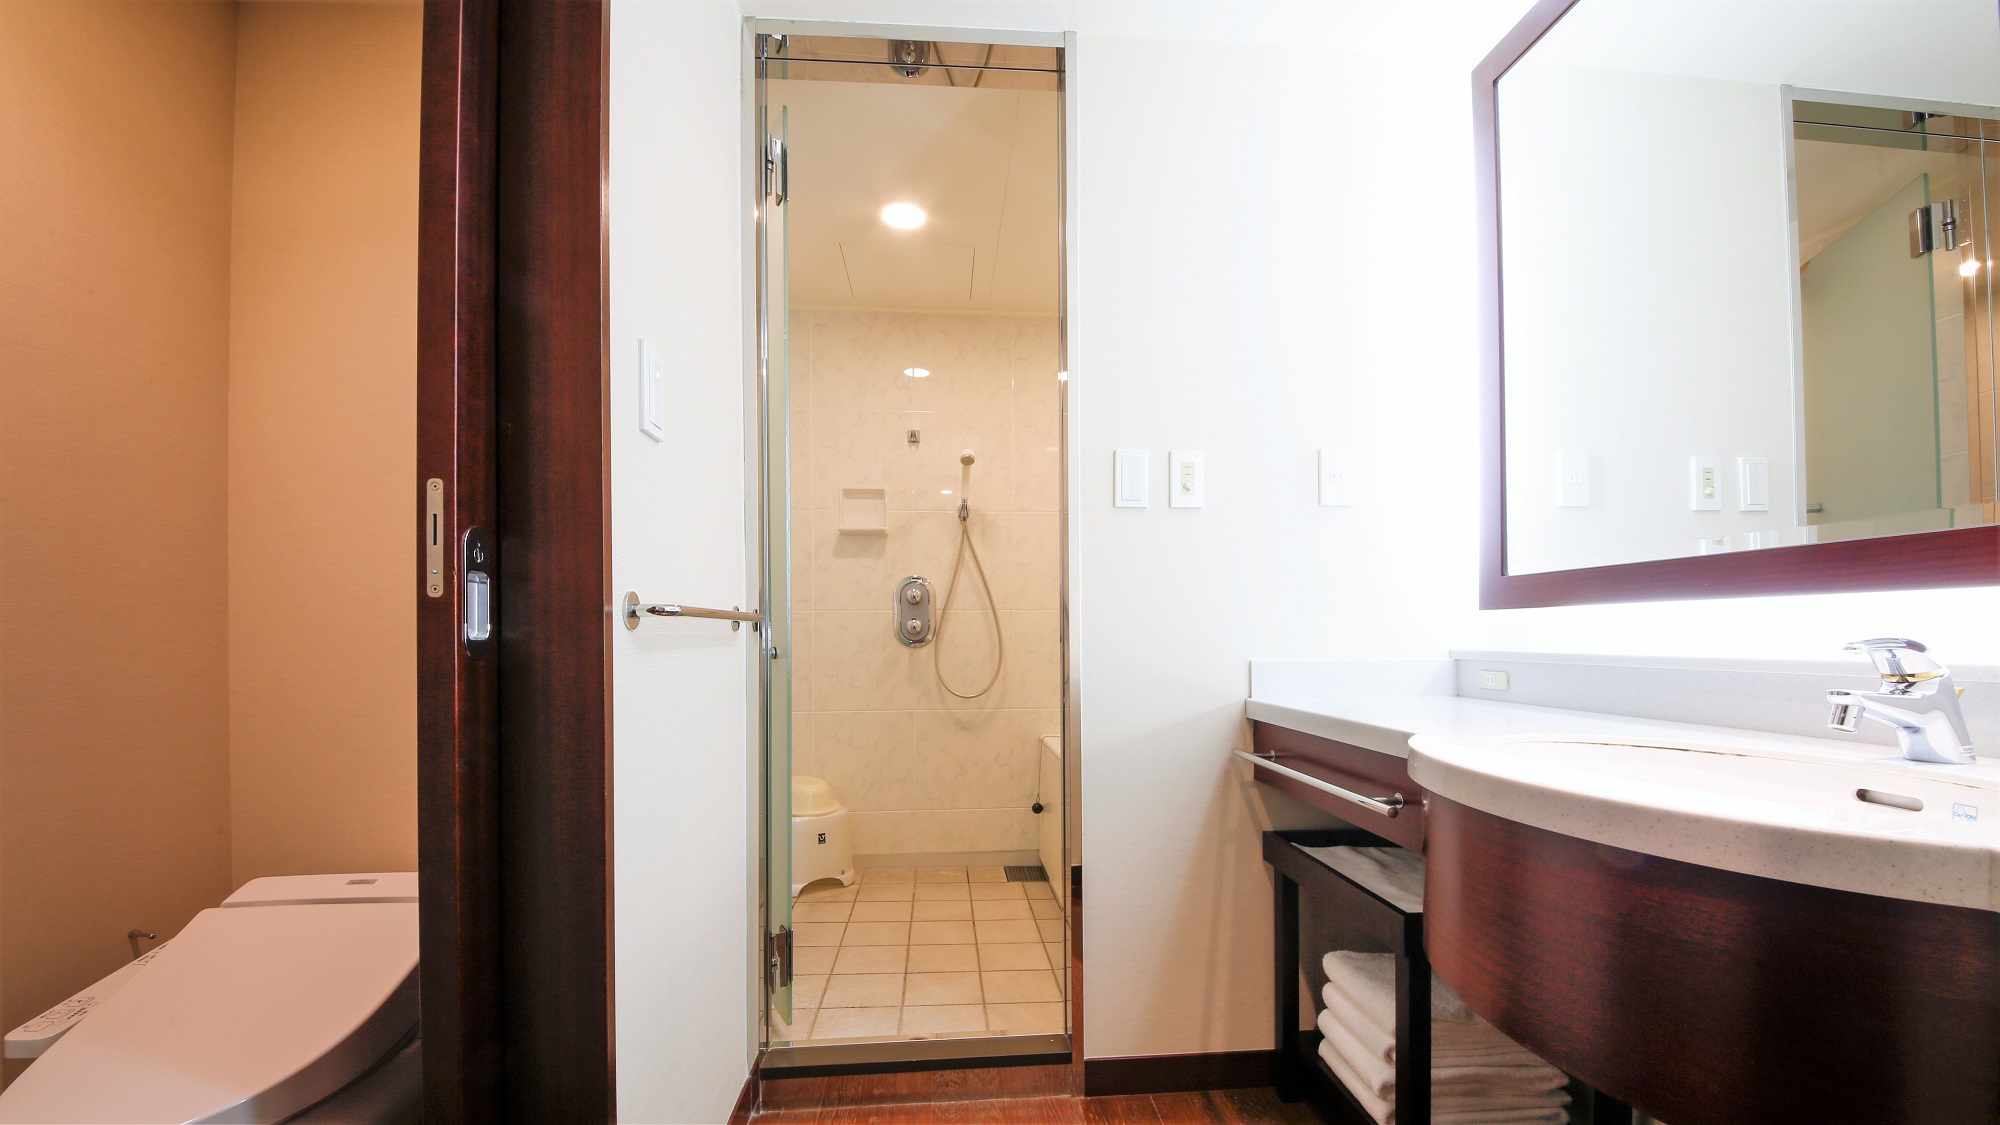 セパレートタイプバスルームイメージ/37平米以上のお部屋はセパレートタイプになります。